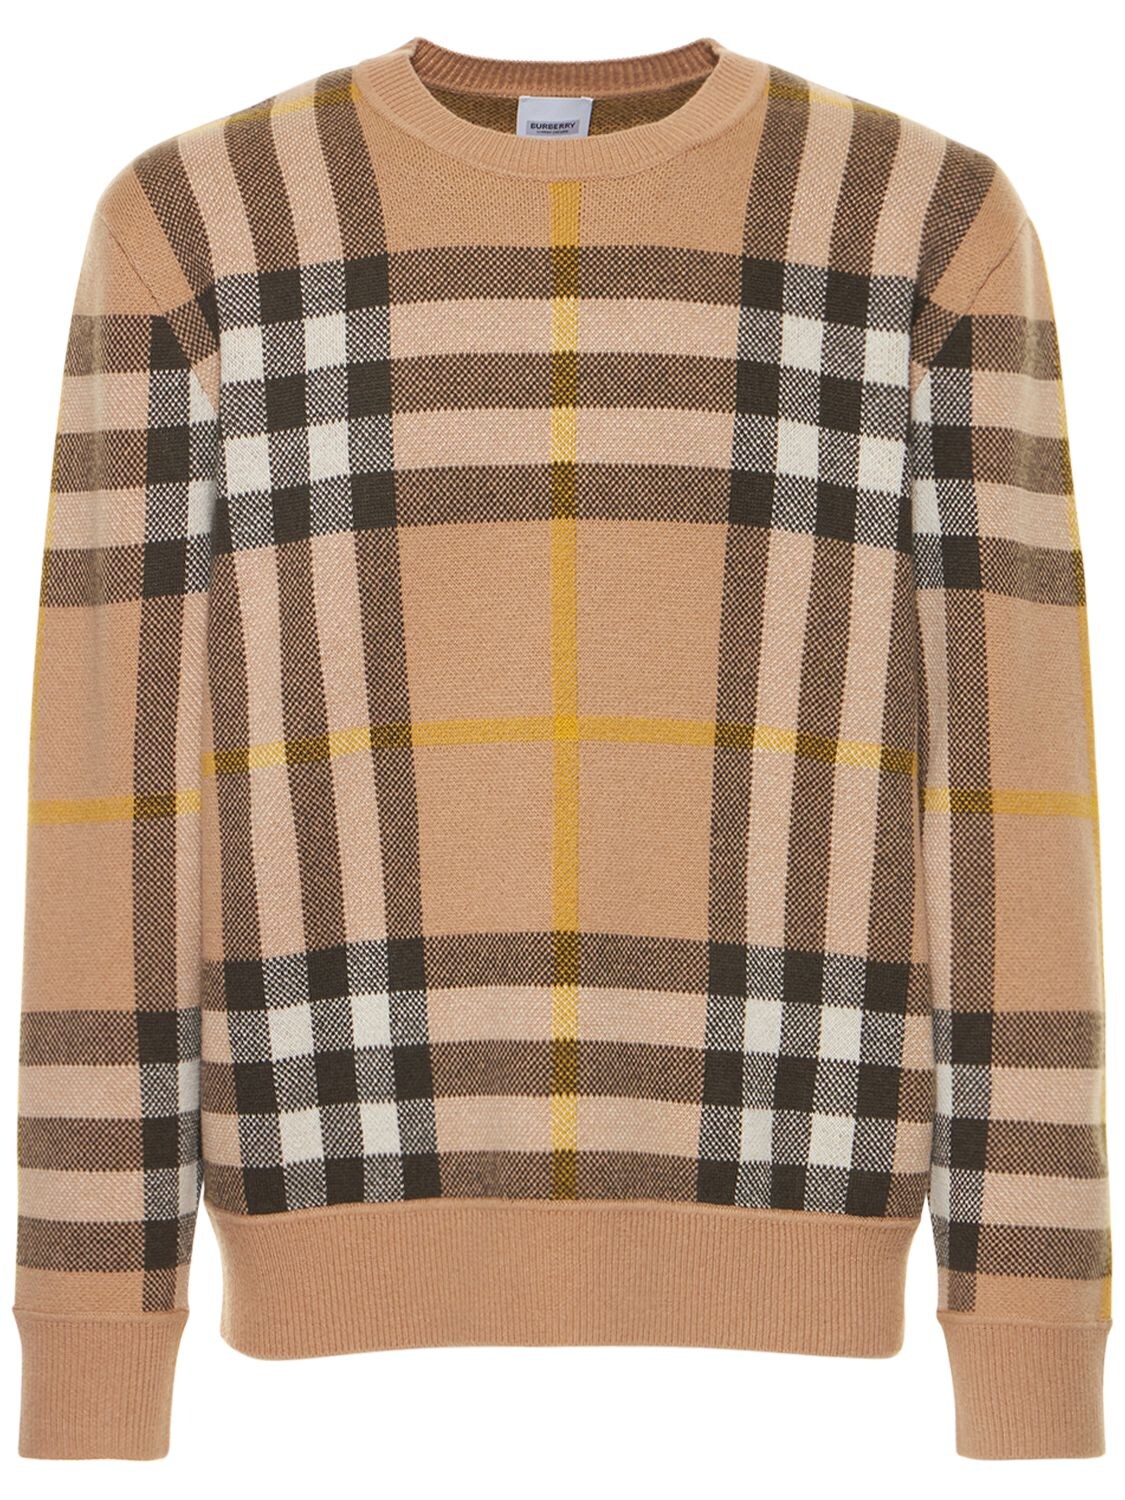 Nixon Check Knit Sweater - BURBERRY - Modalova